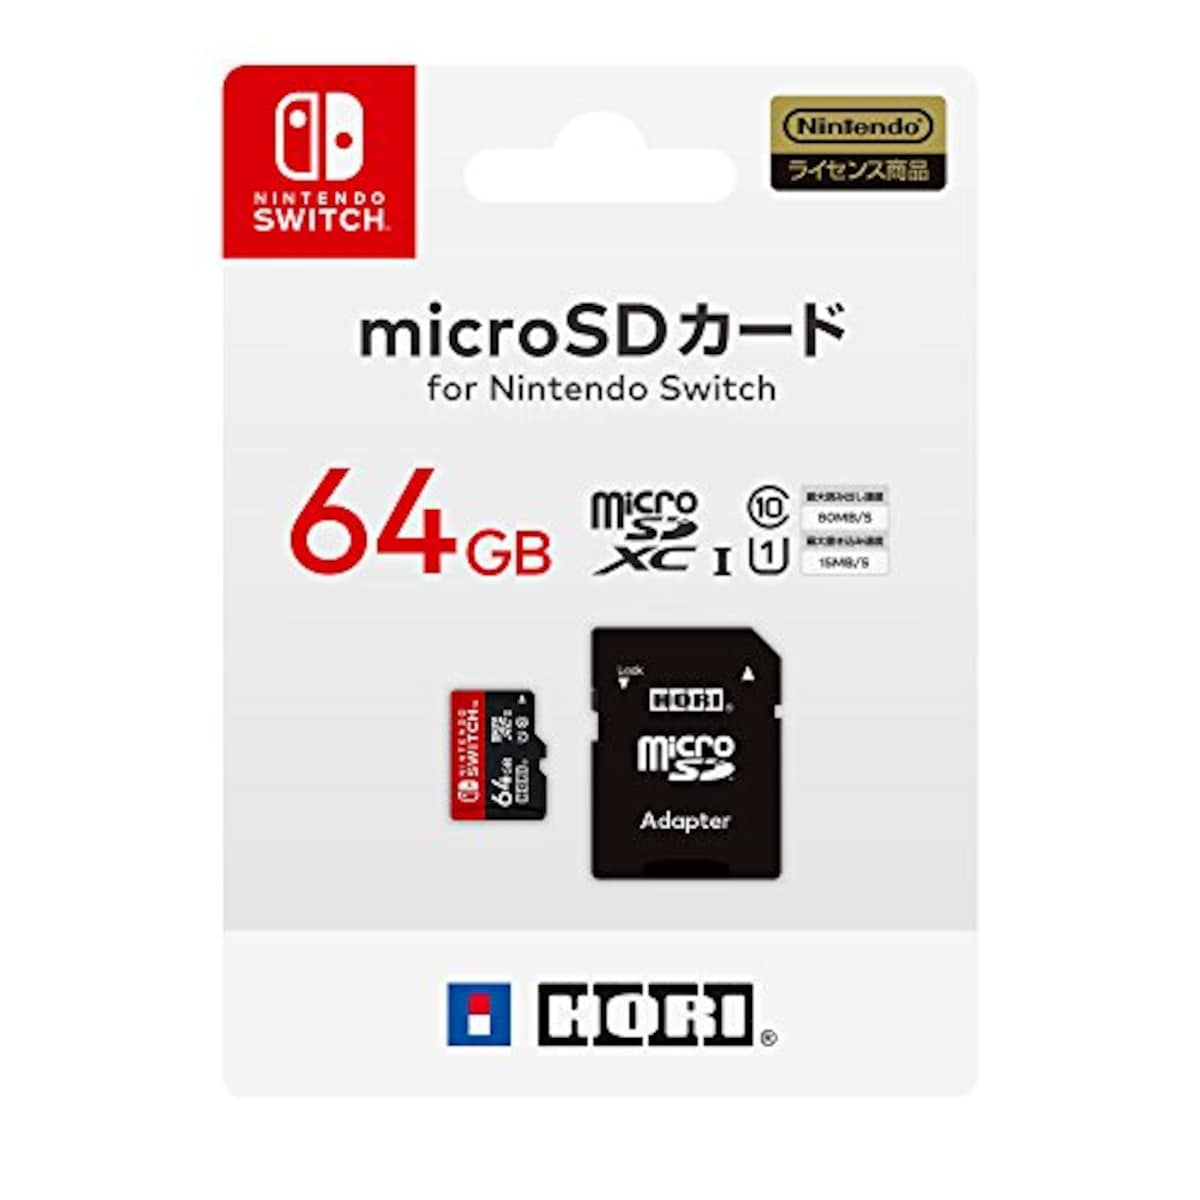 マイクロSDカード64GB for Nintendo Switch